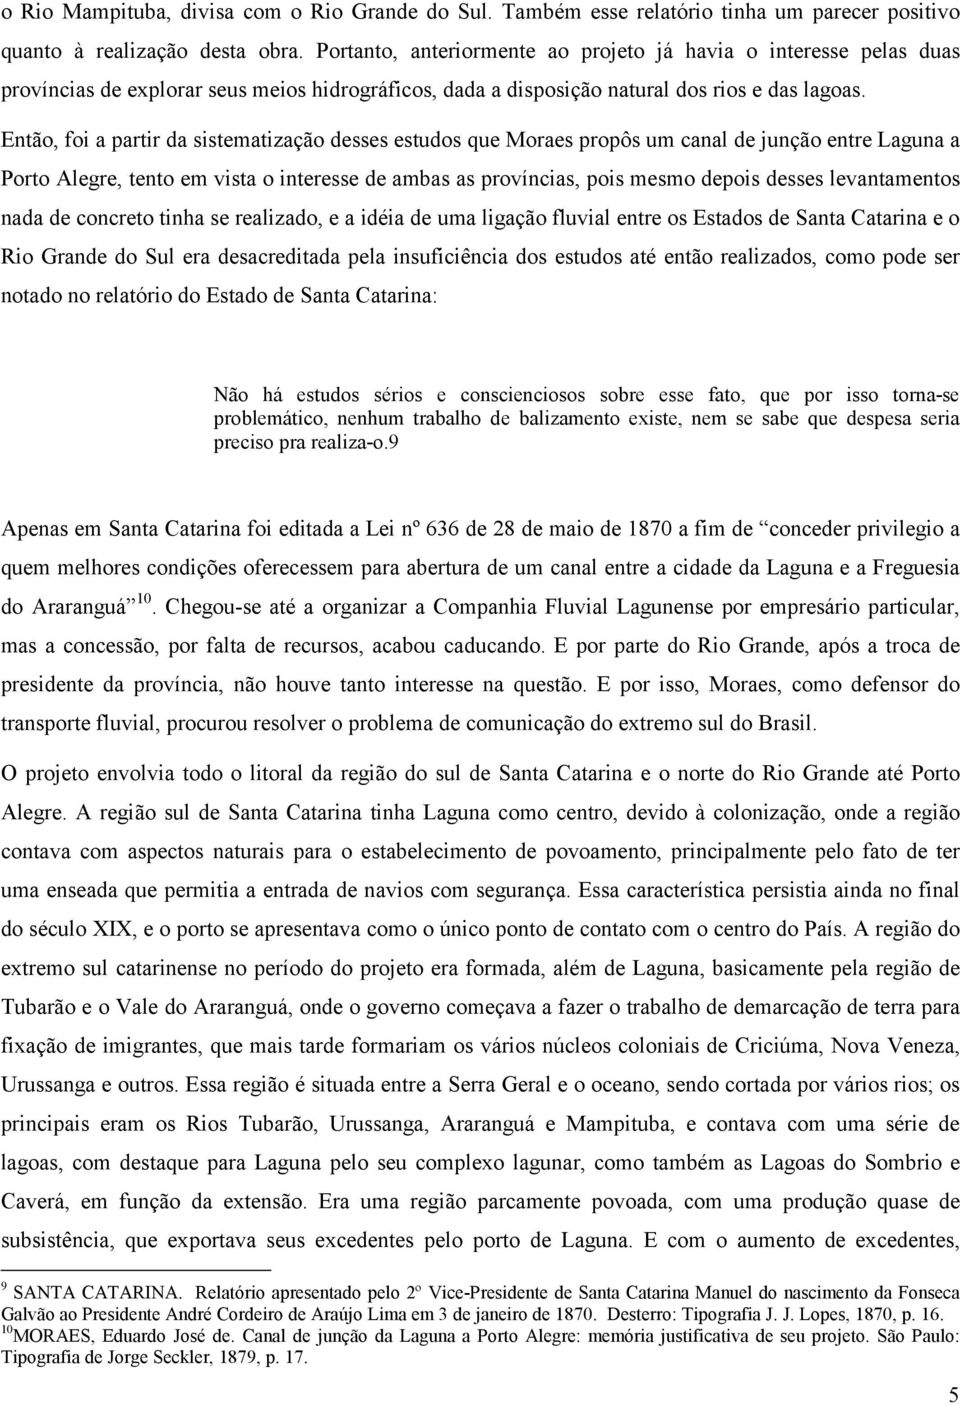 Então, foi a partir da sistematização desses estudos que Moraes propôs um canal de junção entre Laguna a Porto Alegre, tento em vista o interesse de ambas as províncias, pois mesmo depois desses